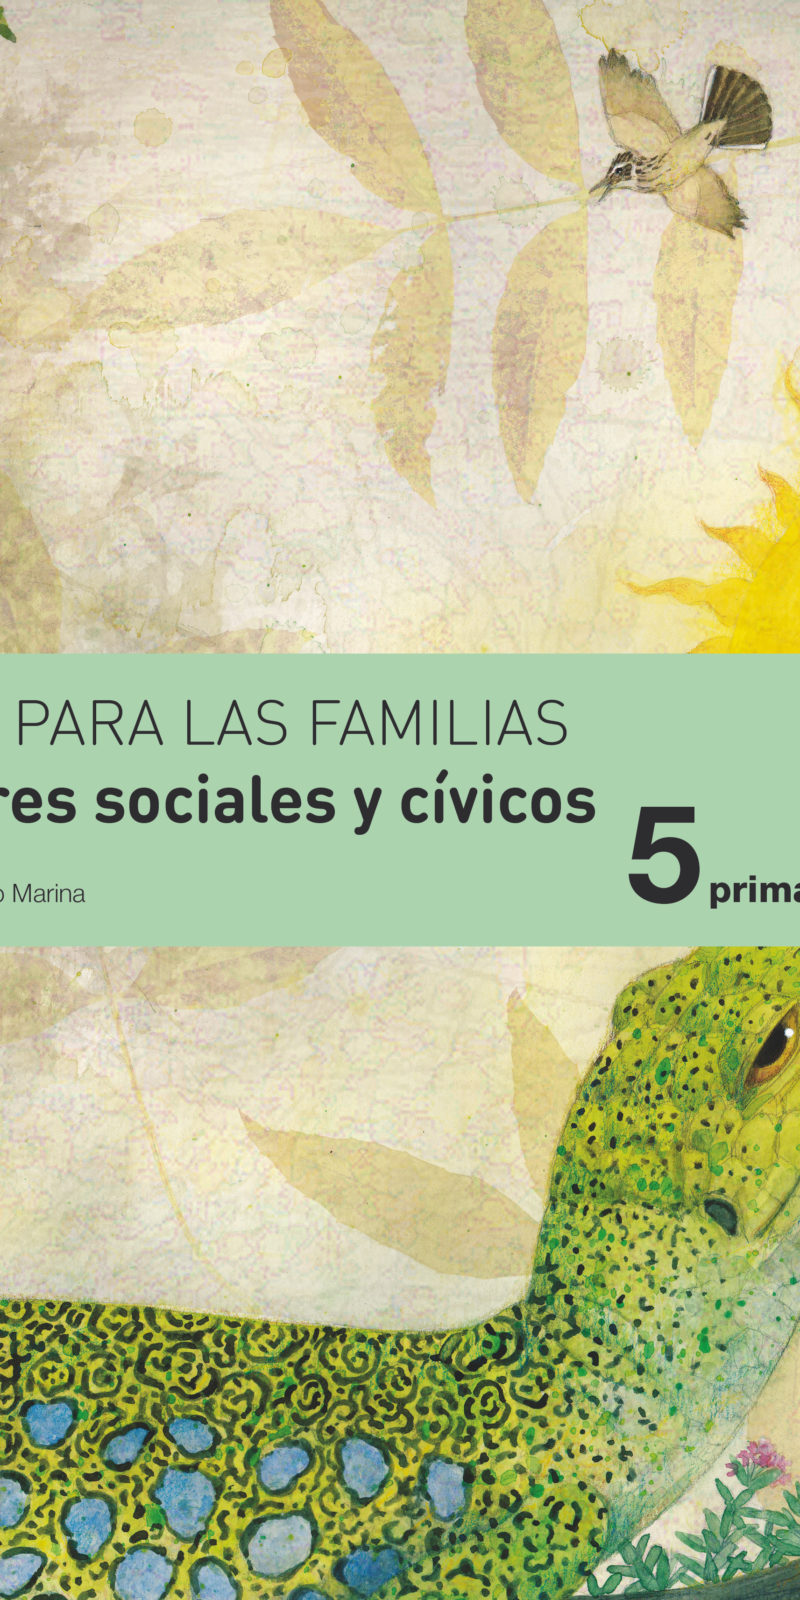 valores sociales y cívicos 5 Primaria